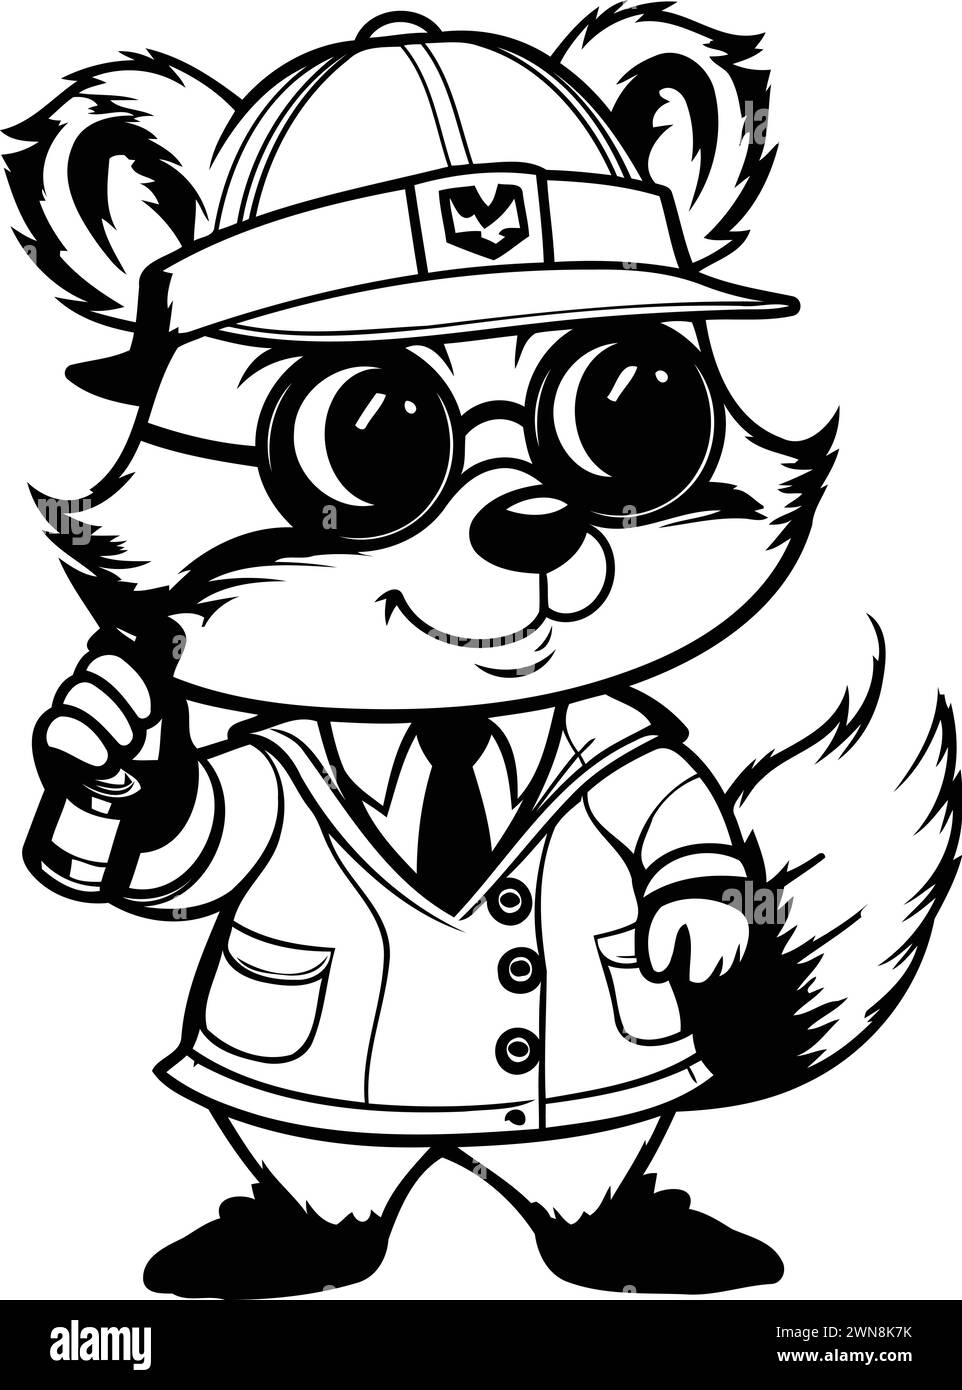 Schwarz-weiß-Zeichentrick-Illustration der Figur des Eichhörnchen Polizist Maskottchen Stock Vektor